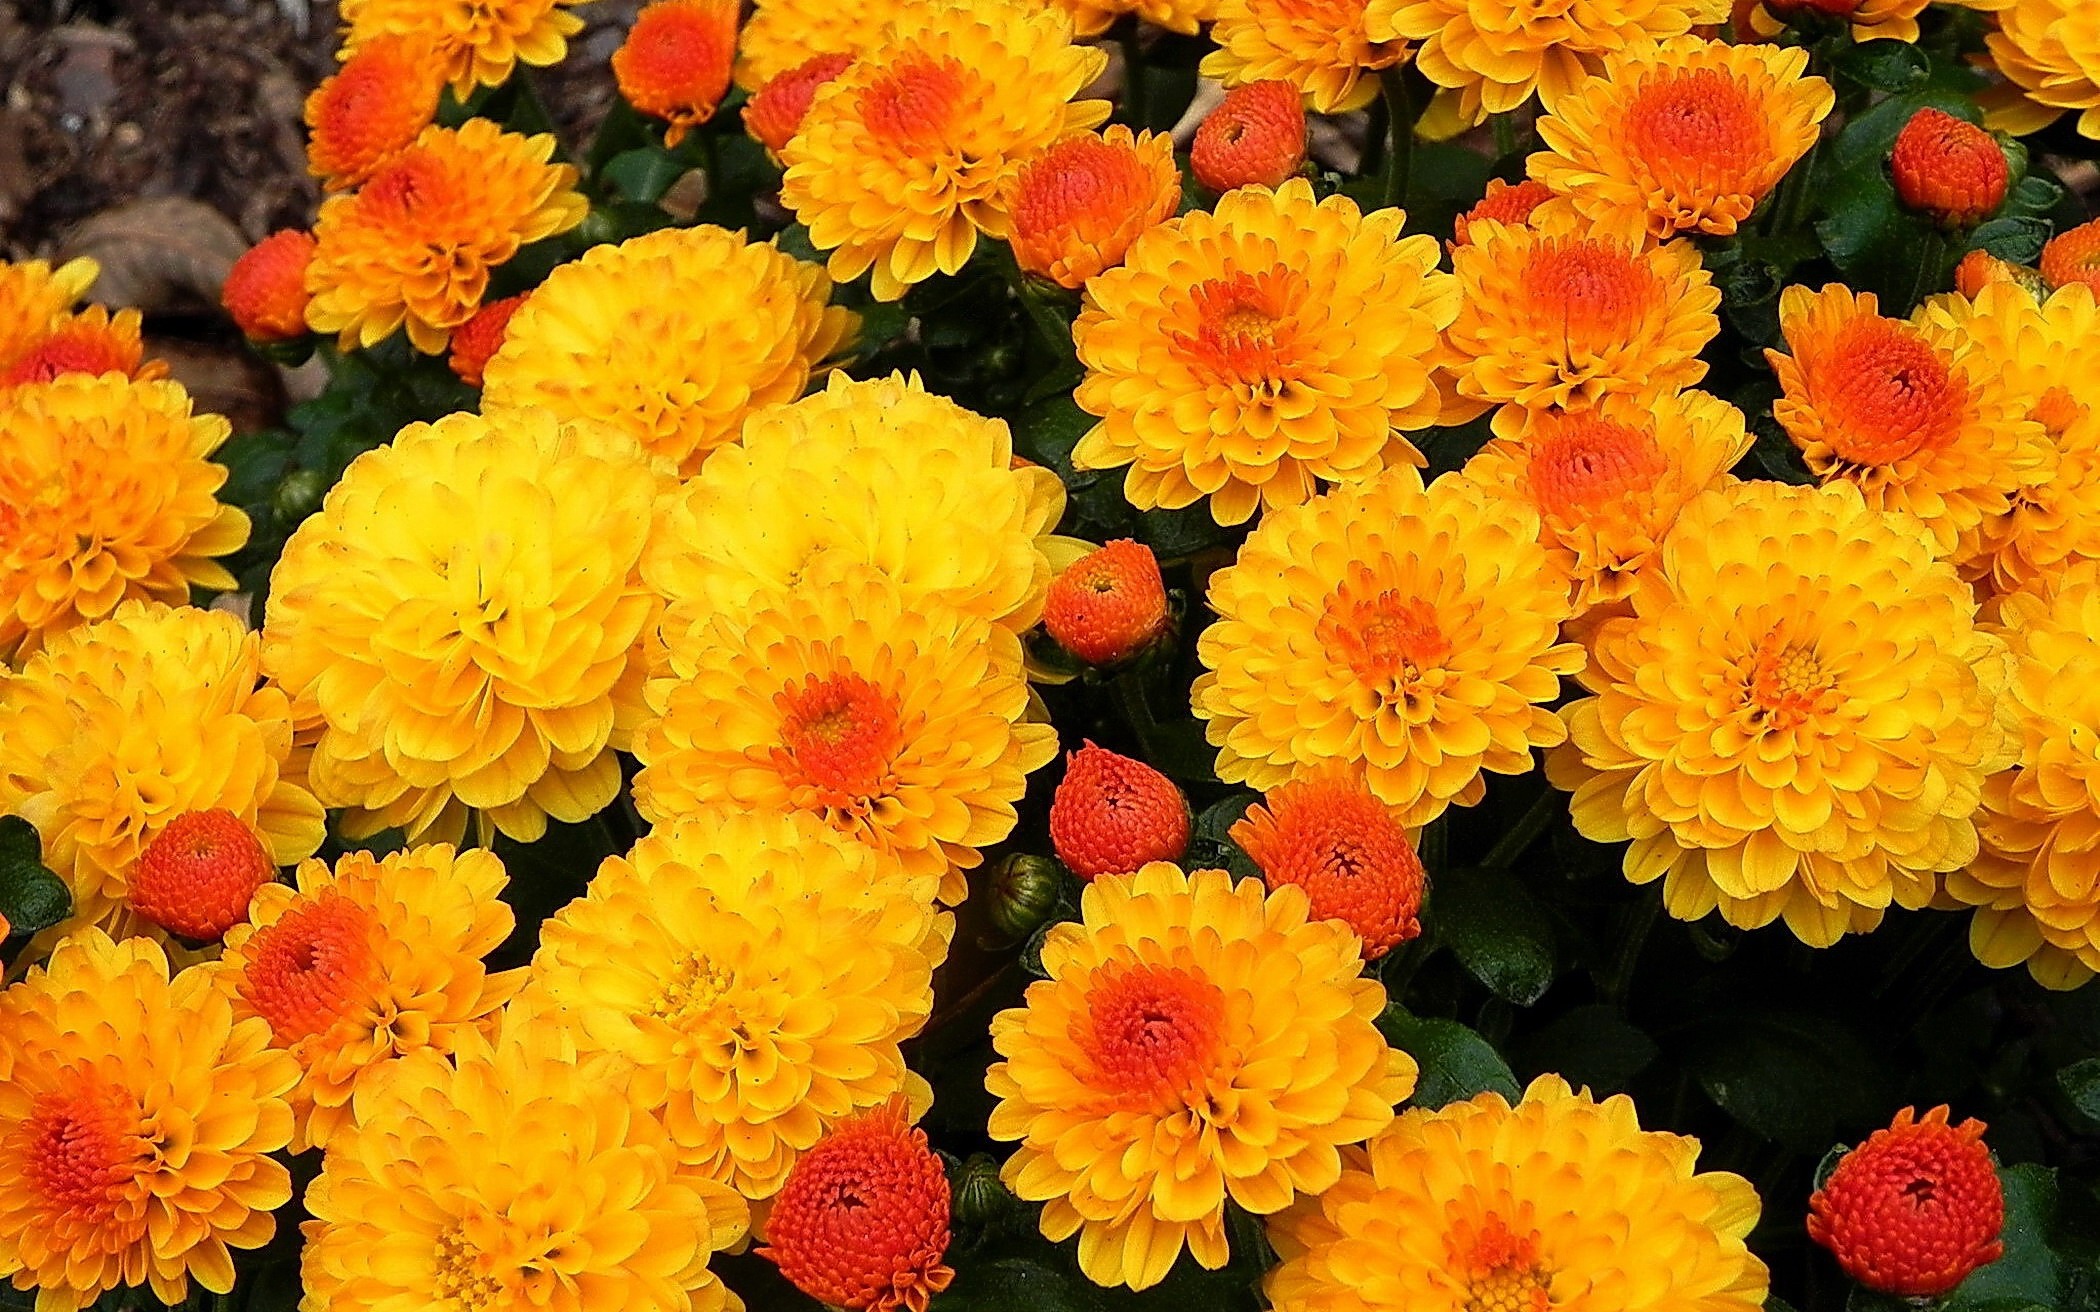 Скачать обои бесплатно Цветок, Хризантема, Желтый Цветок, Земля/природа картинка на рабочий стол ПК